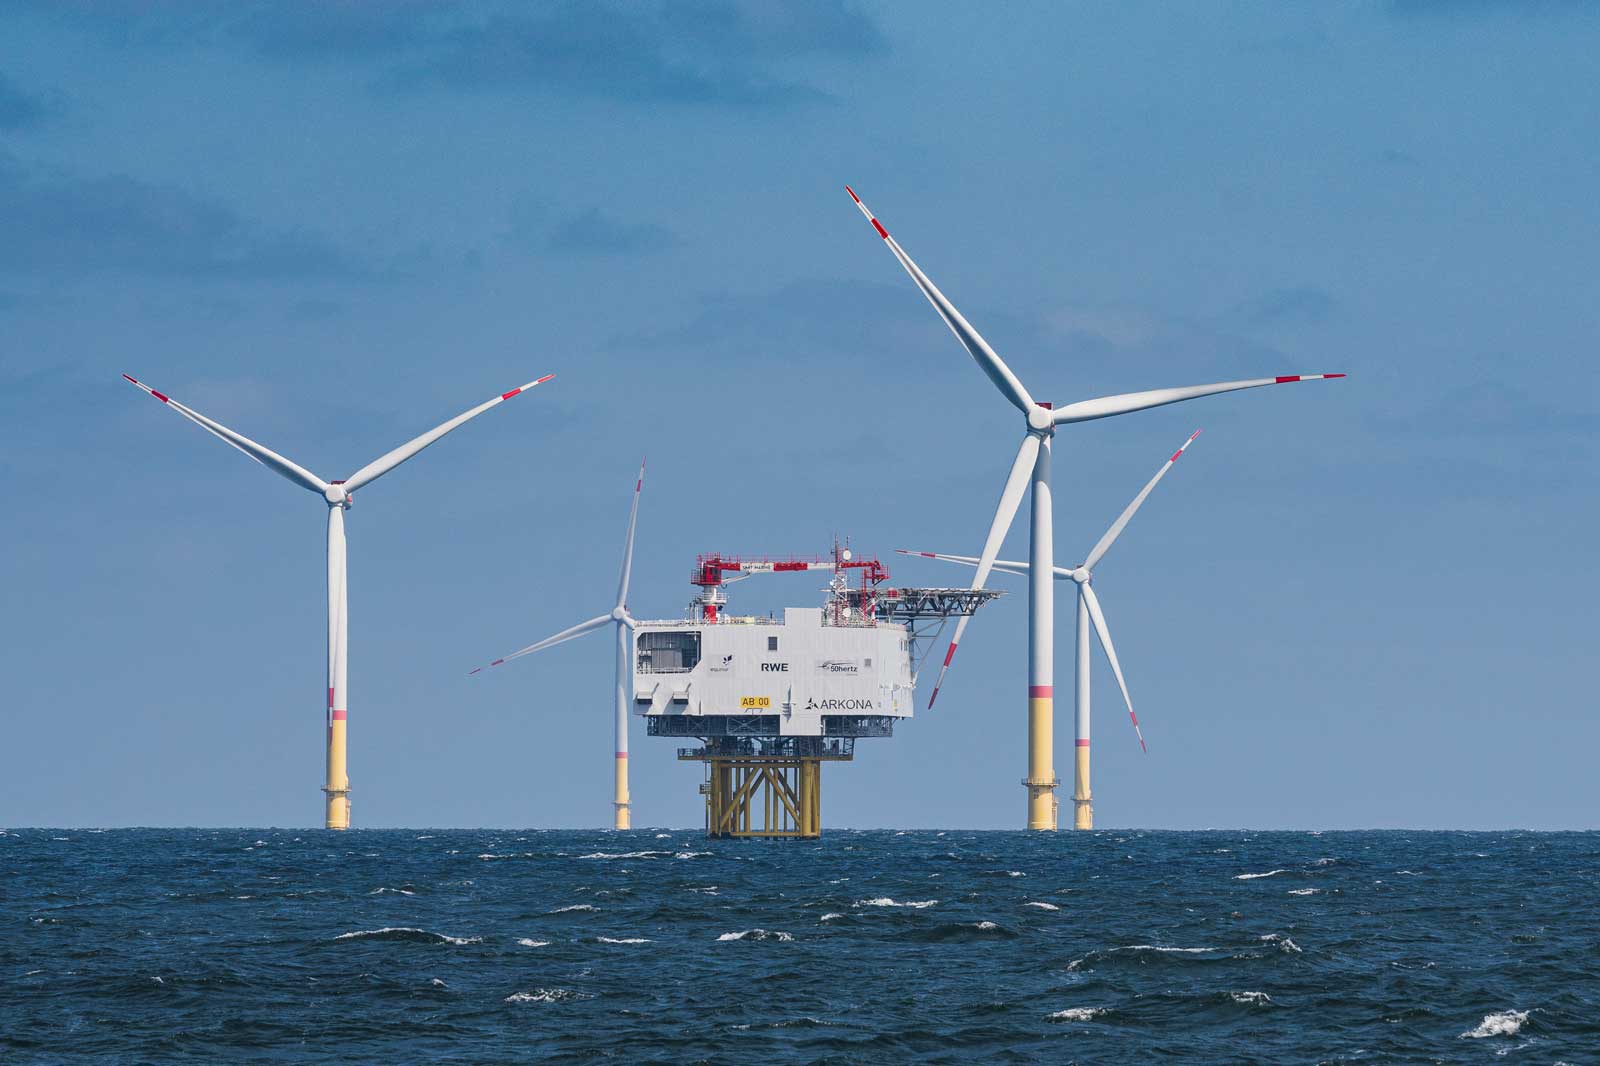 Bringing Offshore Wind to Australia | RWE in Australia